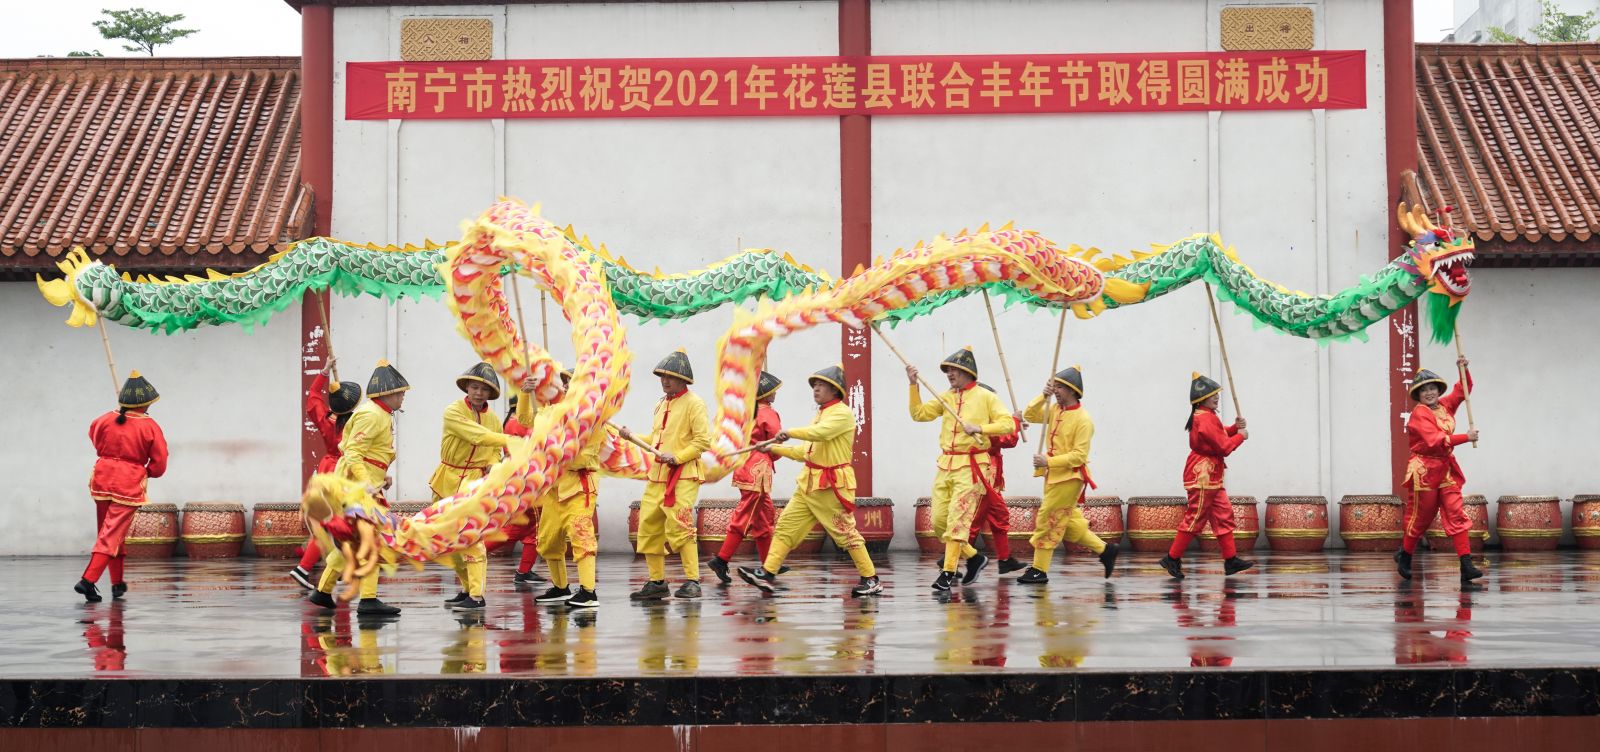 賓陽少數民族演員以《二龍戲珠》節目為花蓮豐年節送祝福。